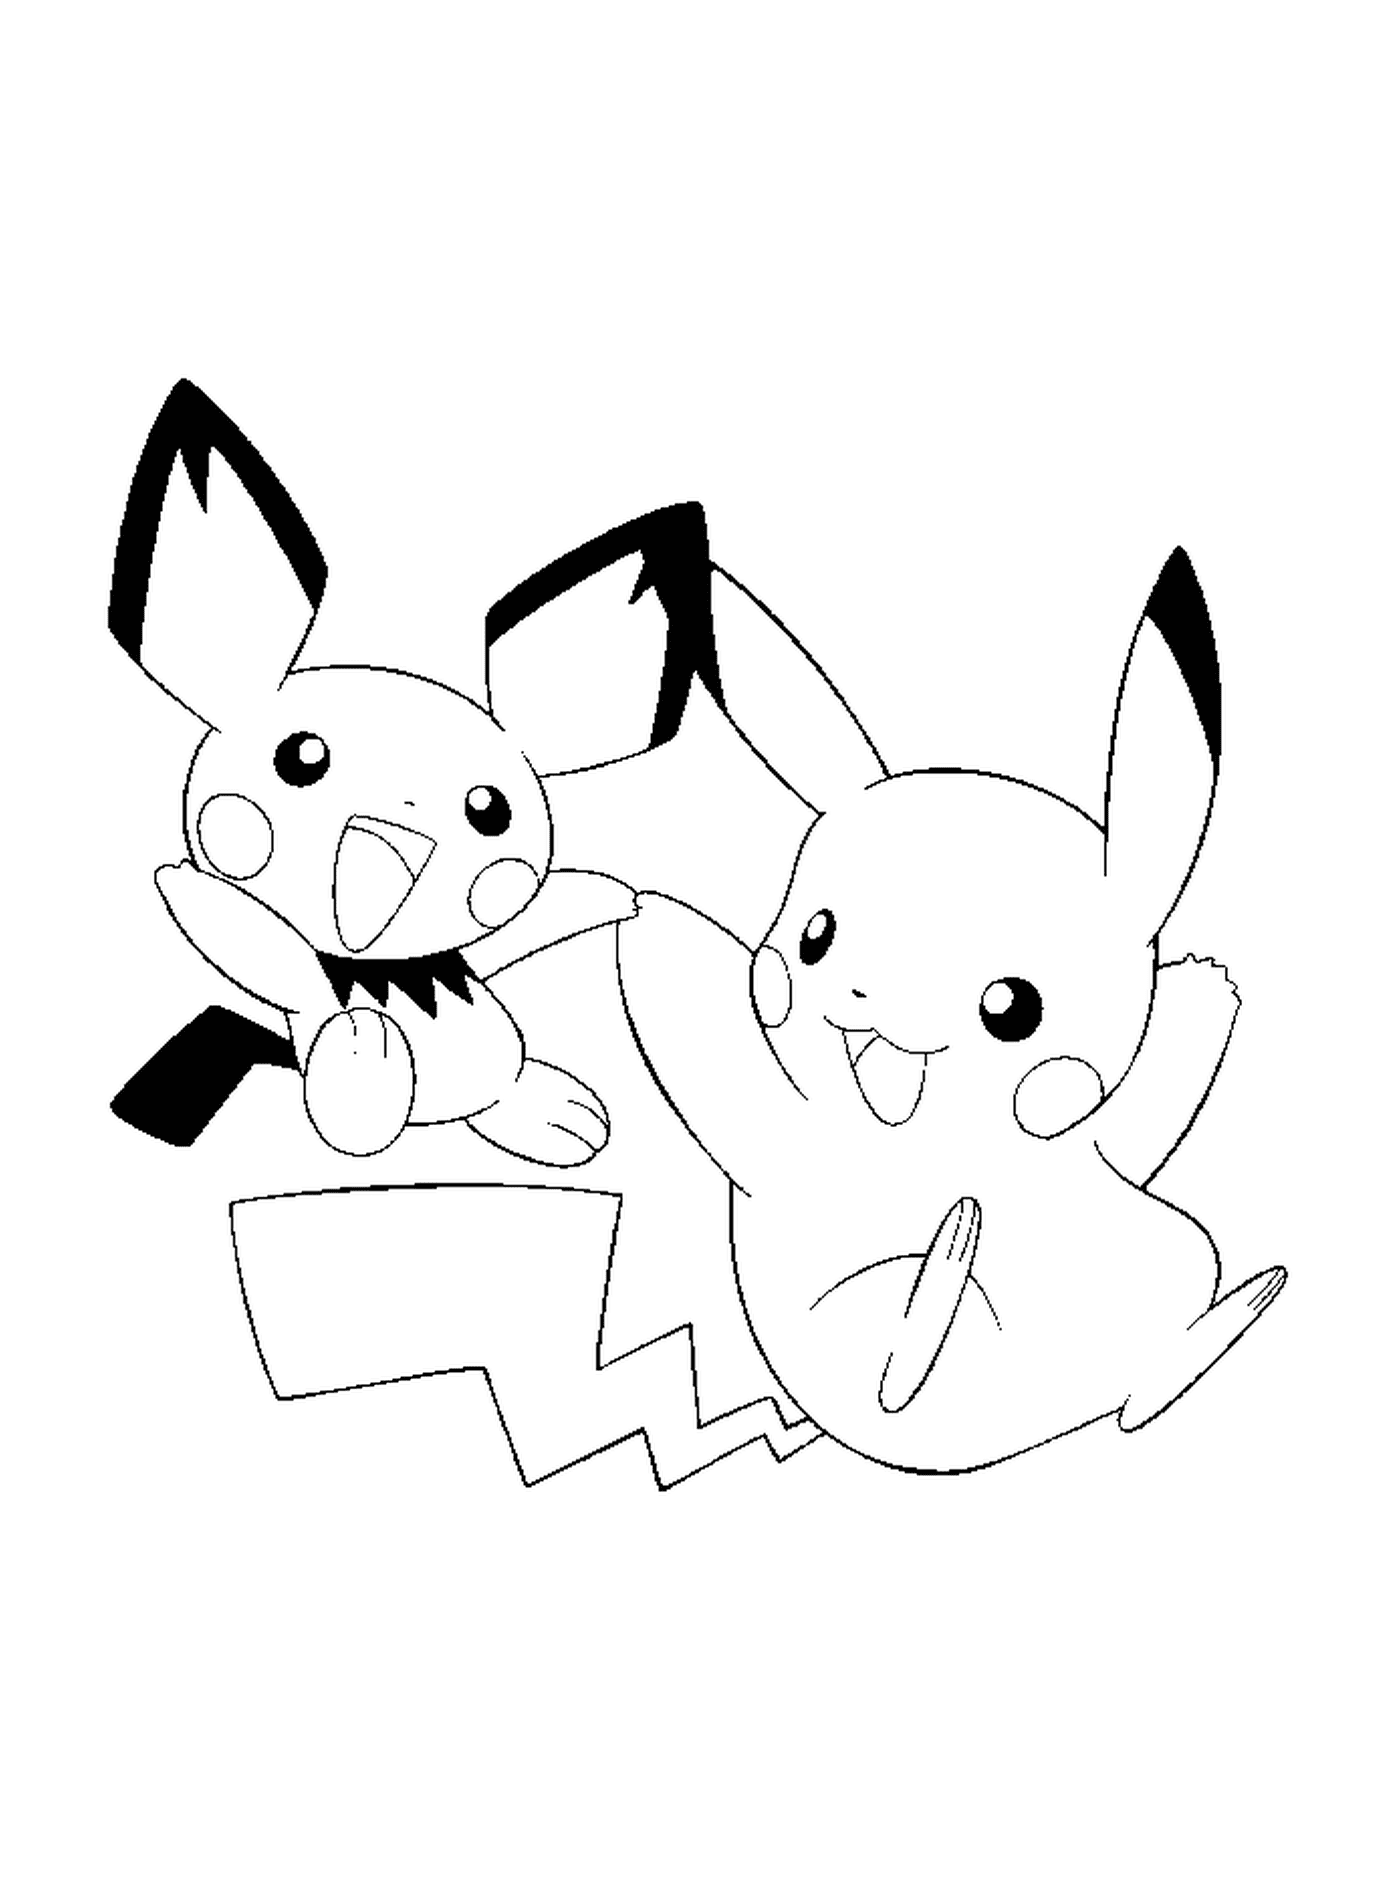  Pikachu und Pichu, unzertrennliche Freunde 